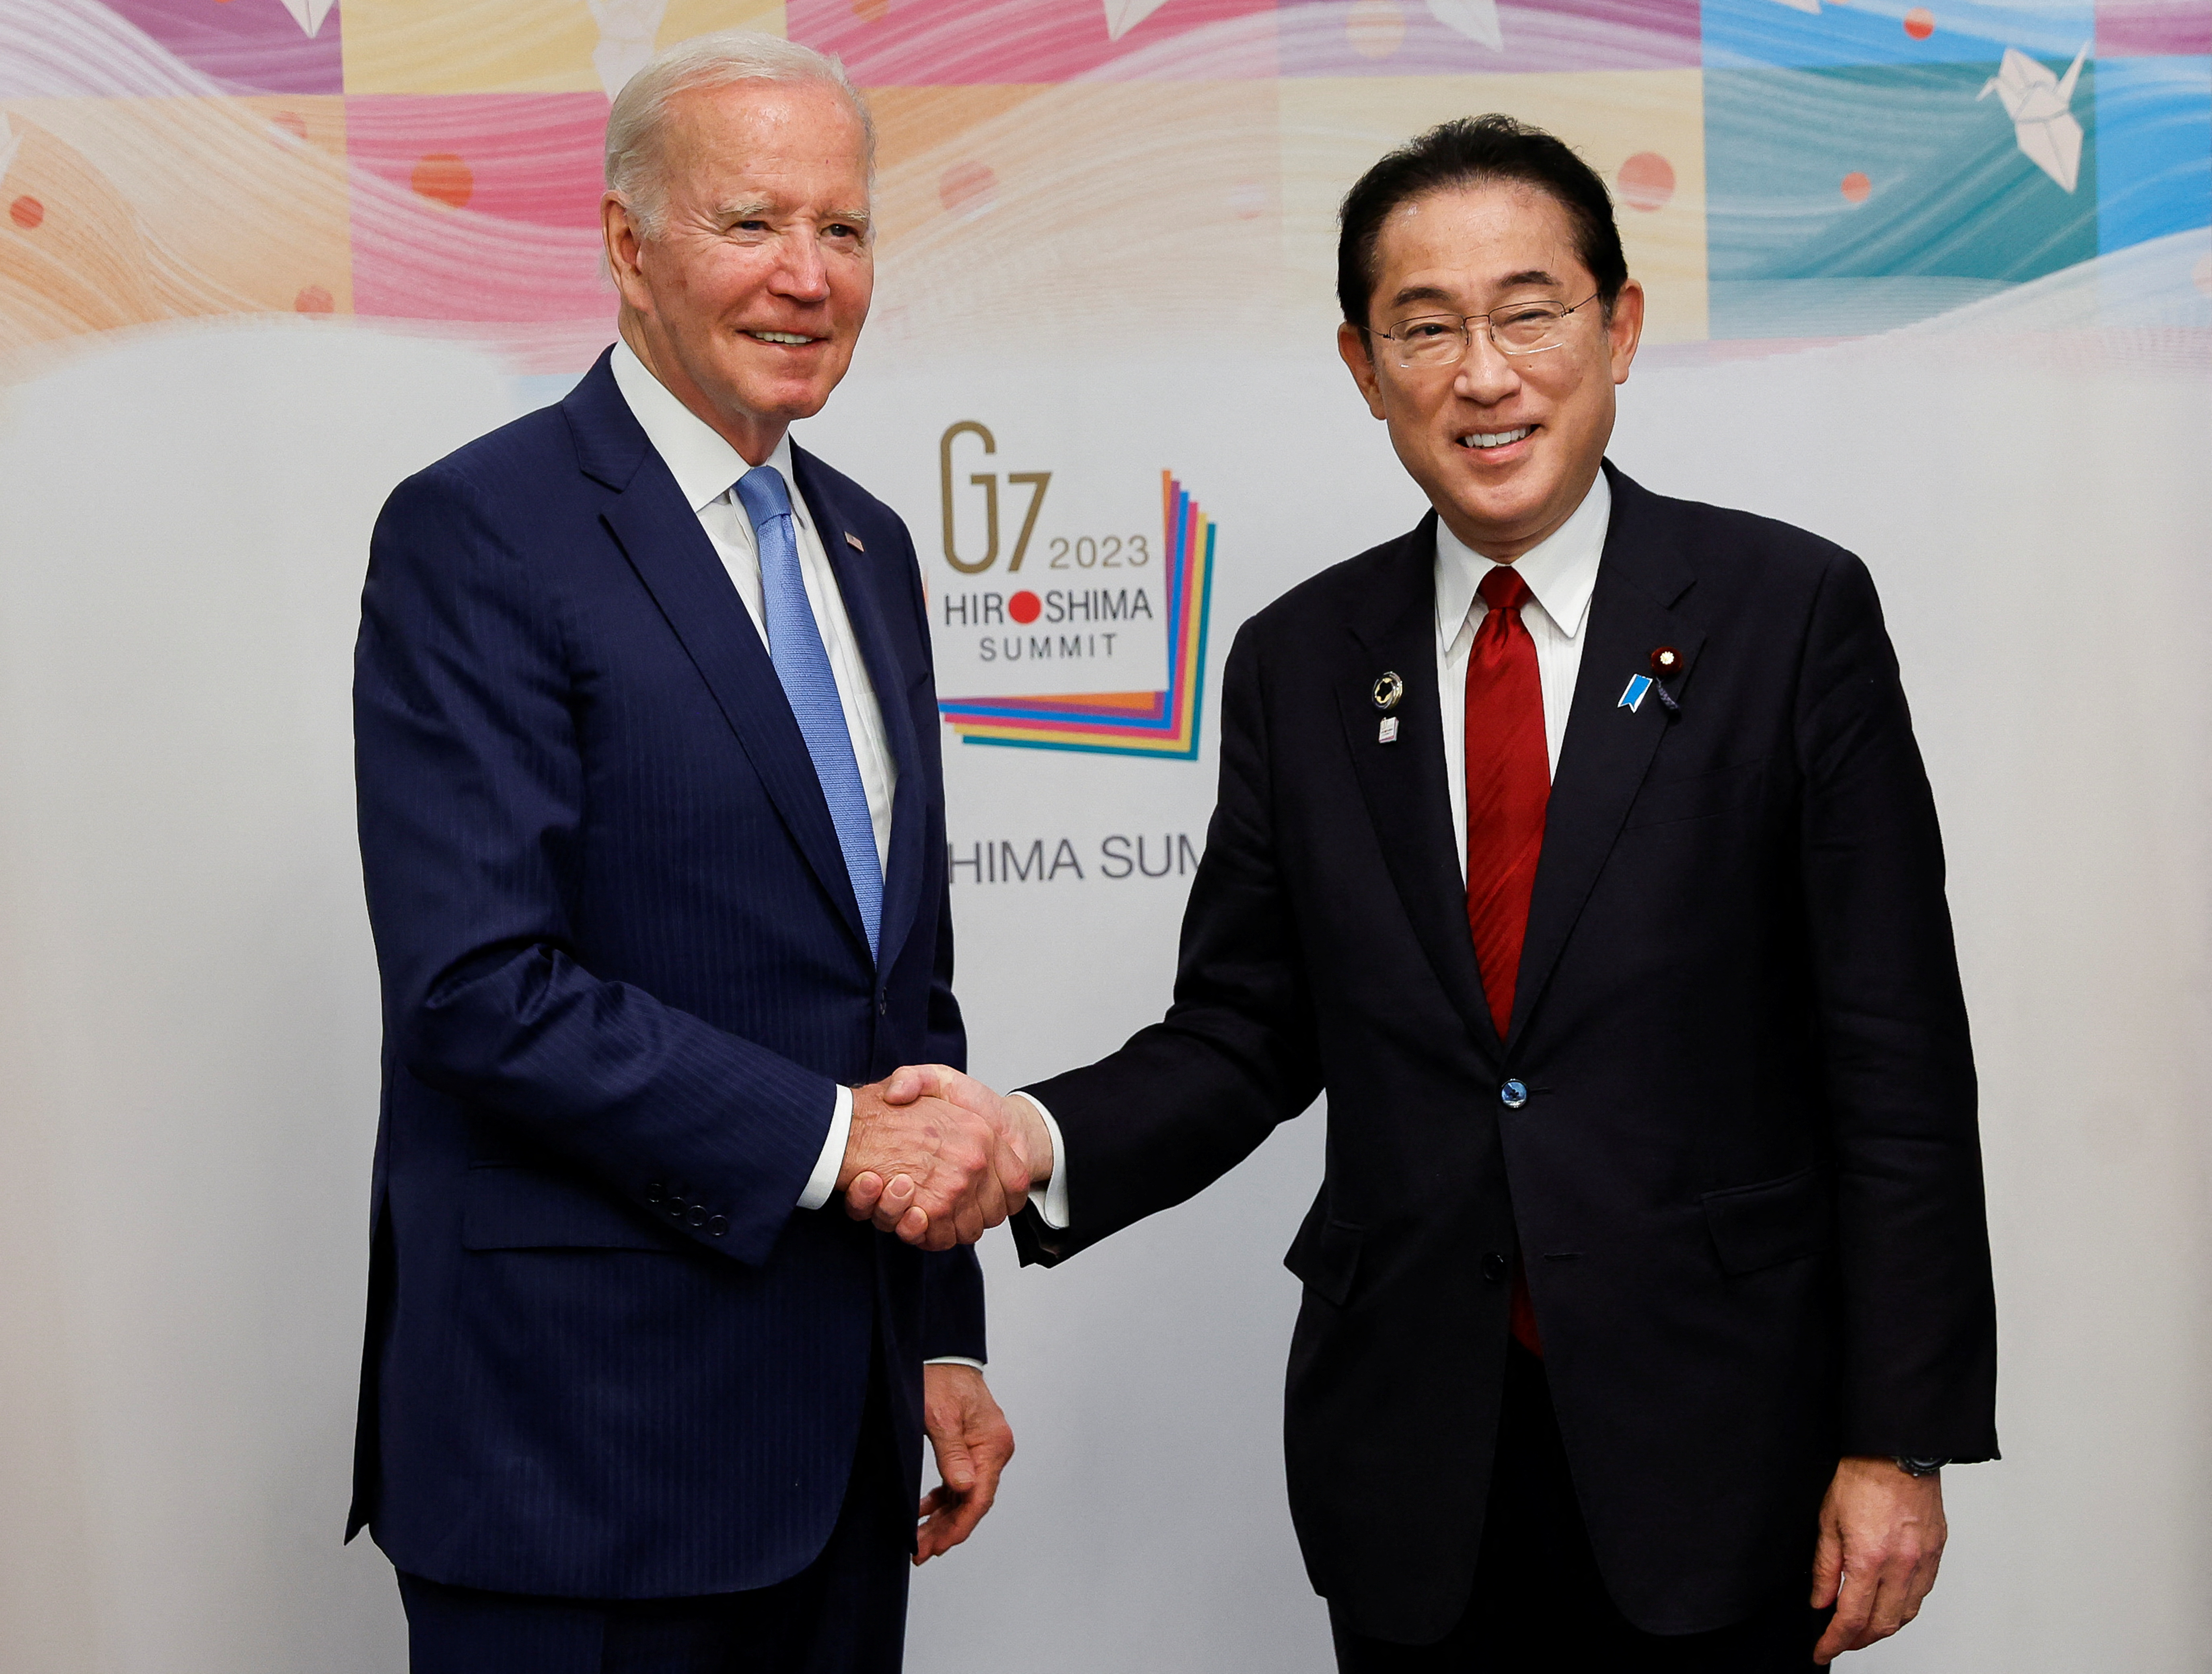 El presidente estadounidense Joe Biden se reúne con el primer ministro japonés Fumio Kishida, antes de la Cumbre del G7, en el RIHGA Royal Hotel Hiroshima, en Hiroshima, Japón, 18 de mayo de 2023. REUTERS/Jonathan Ernst